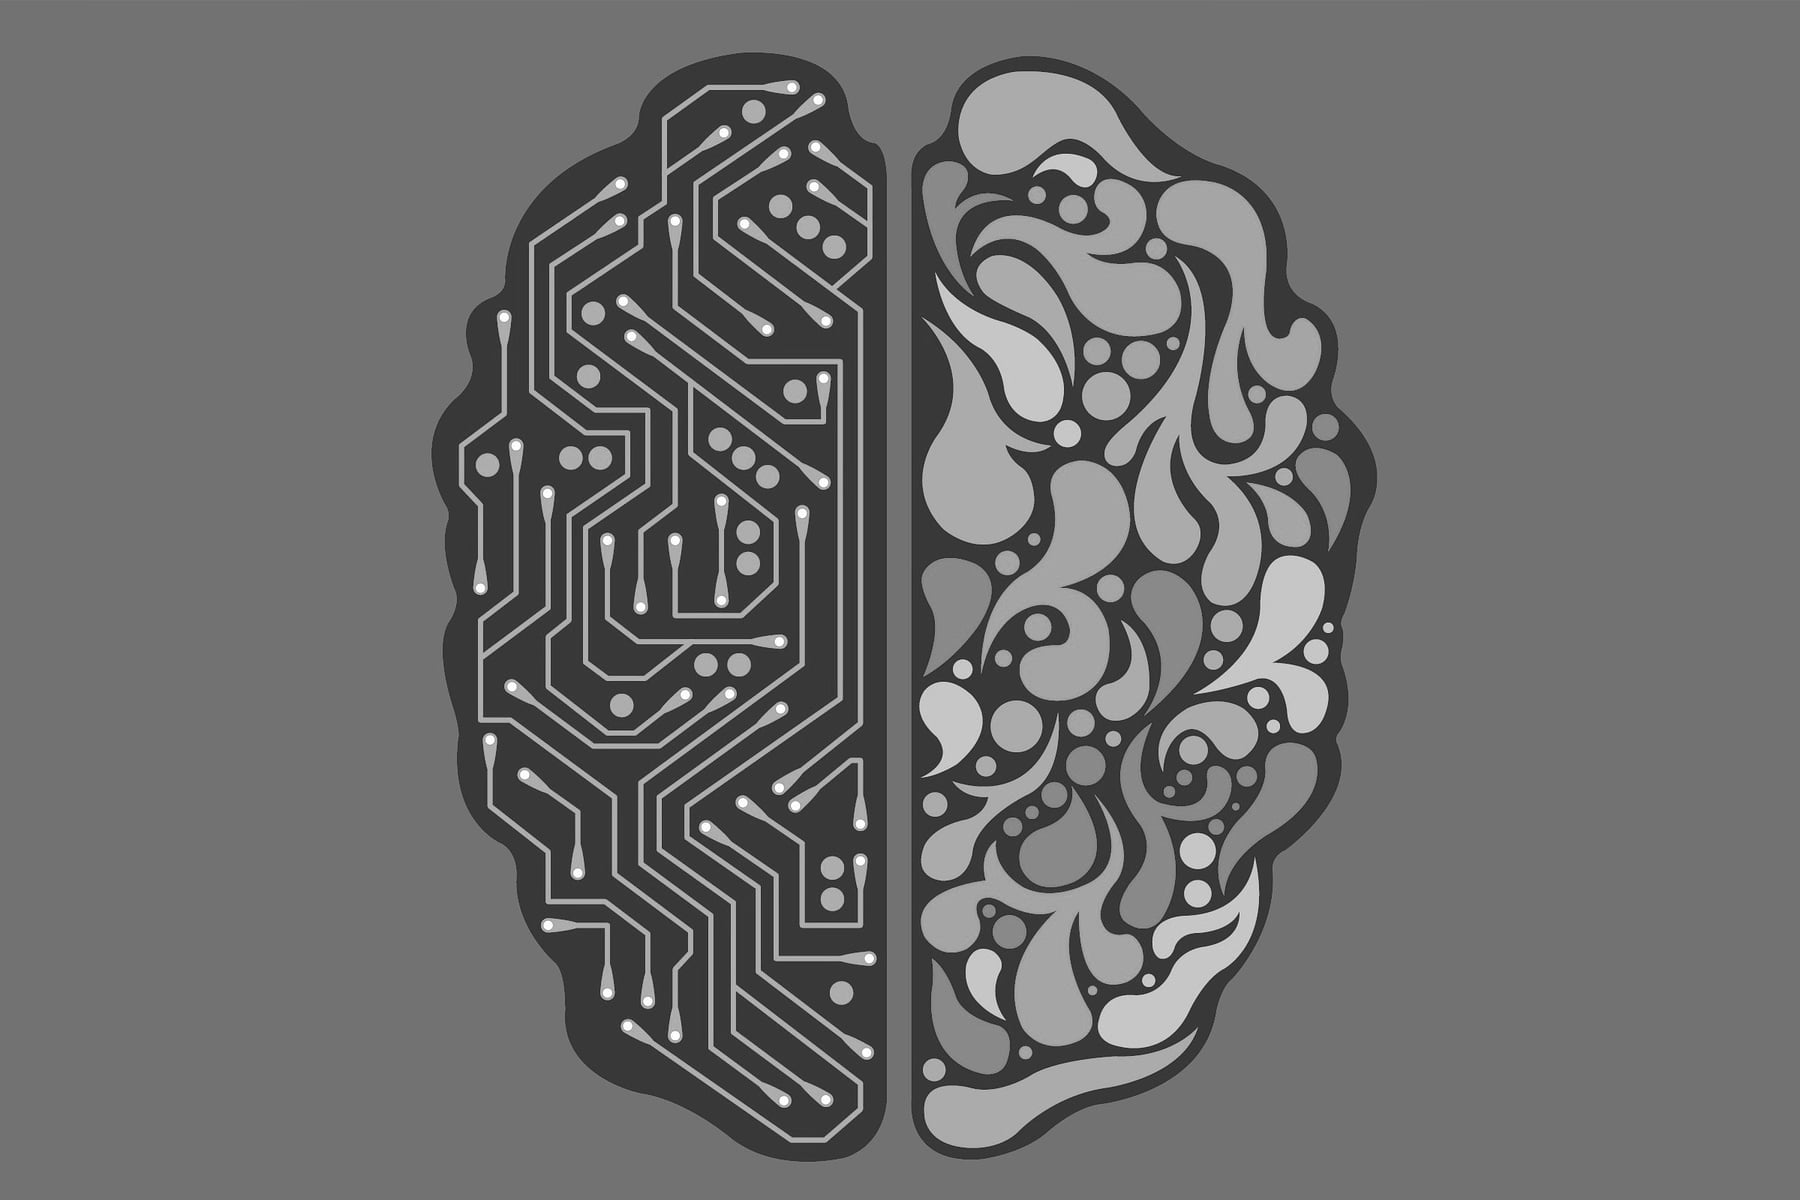 Les machines ont-elles un cerveau ?